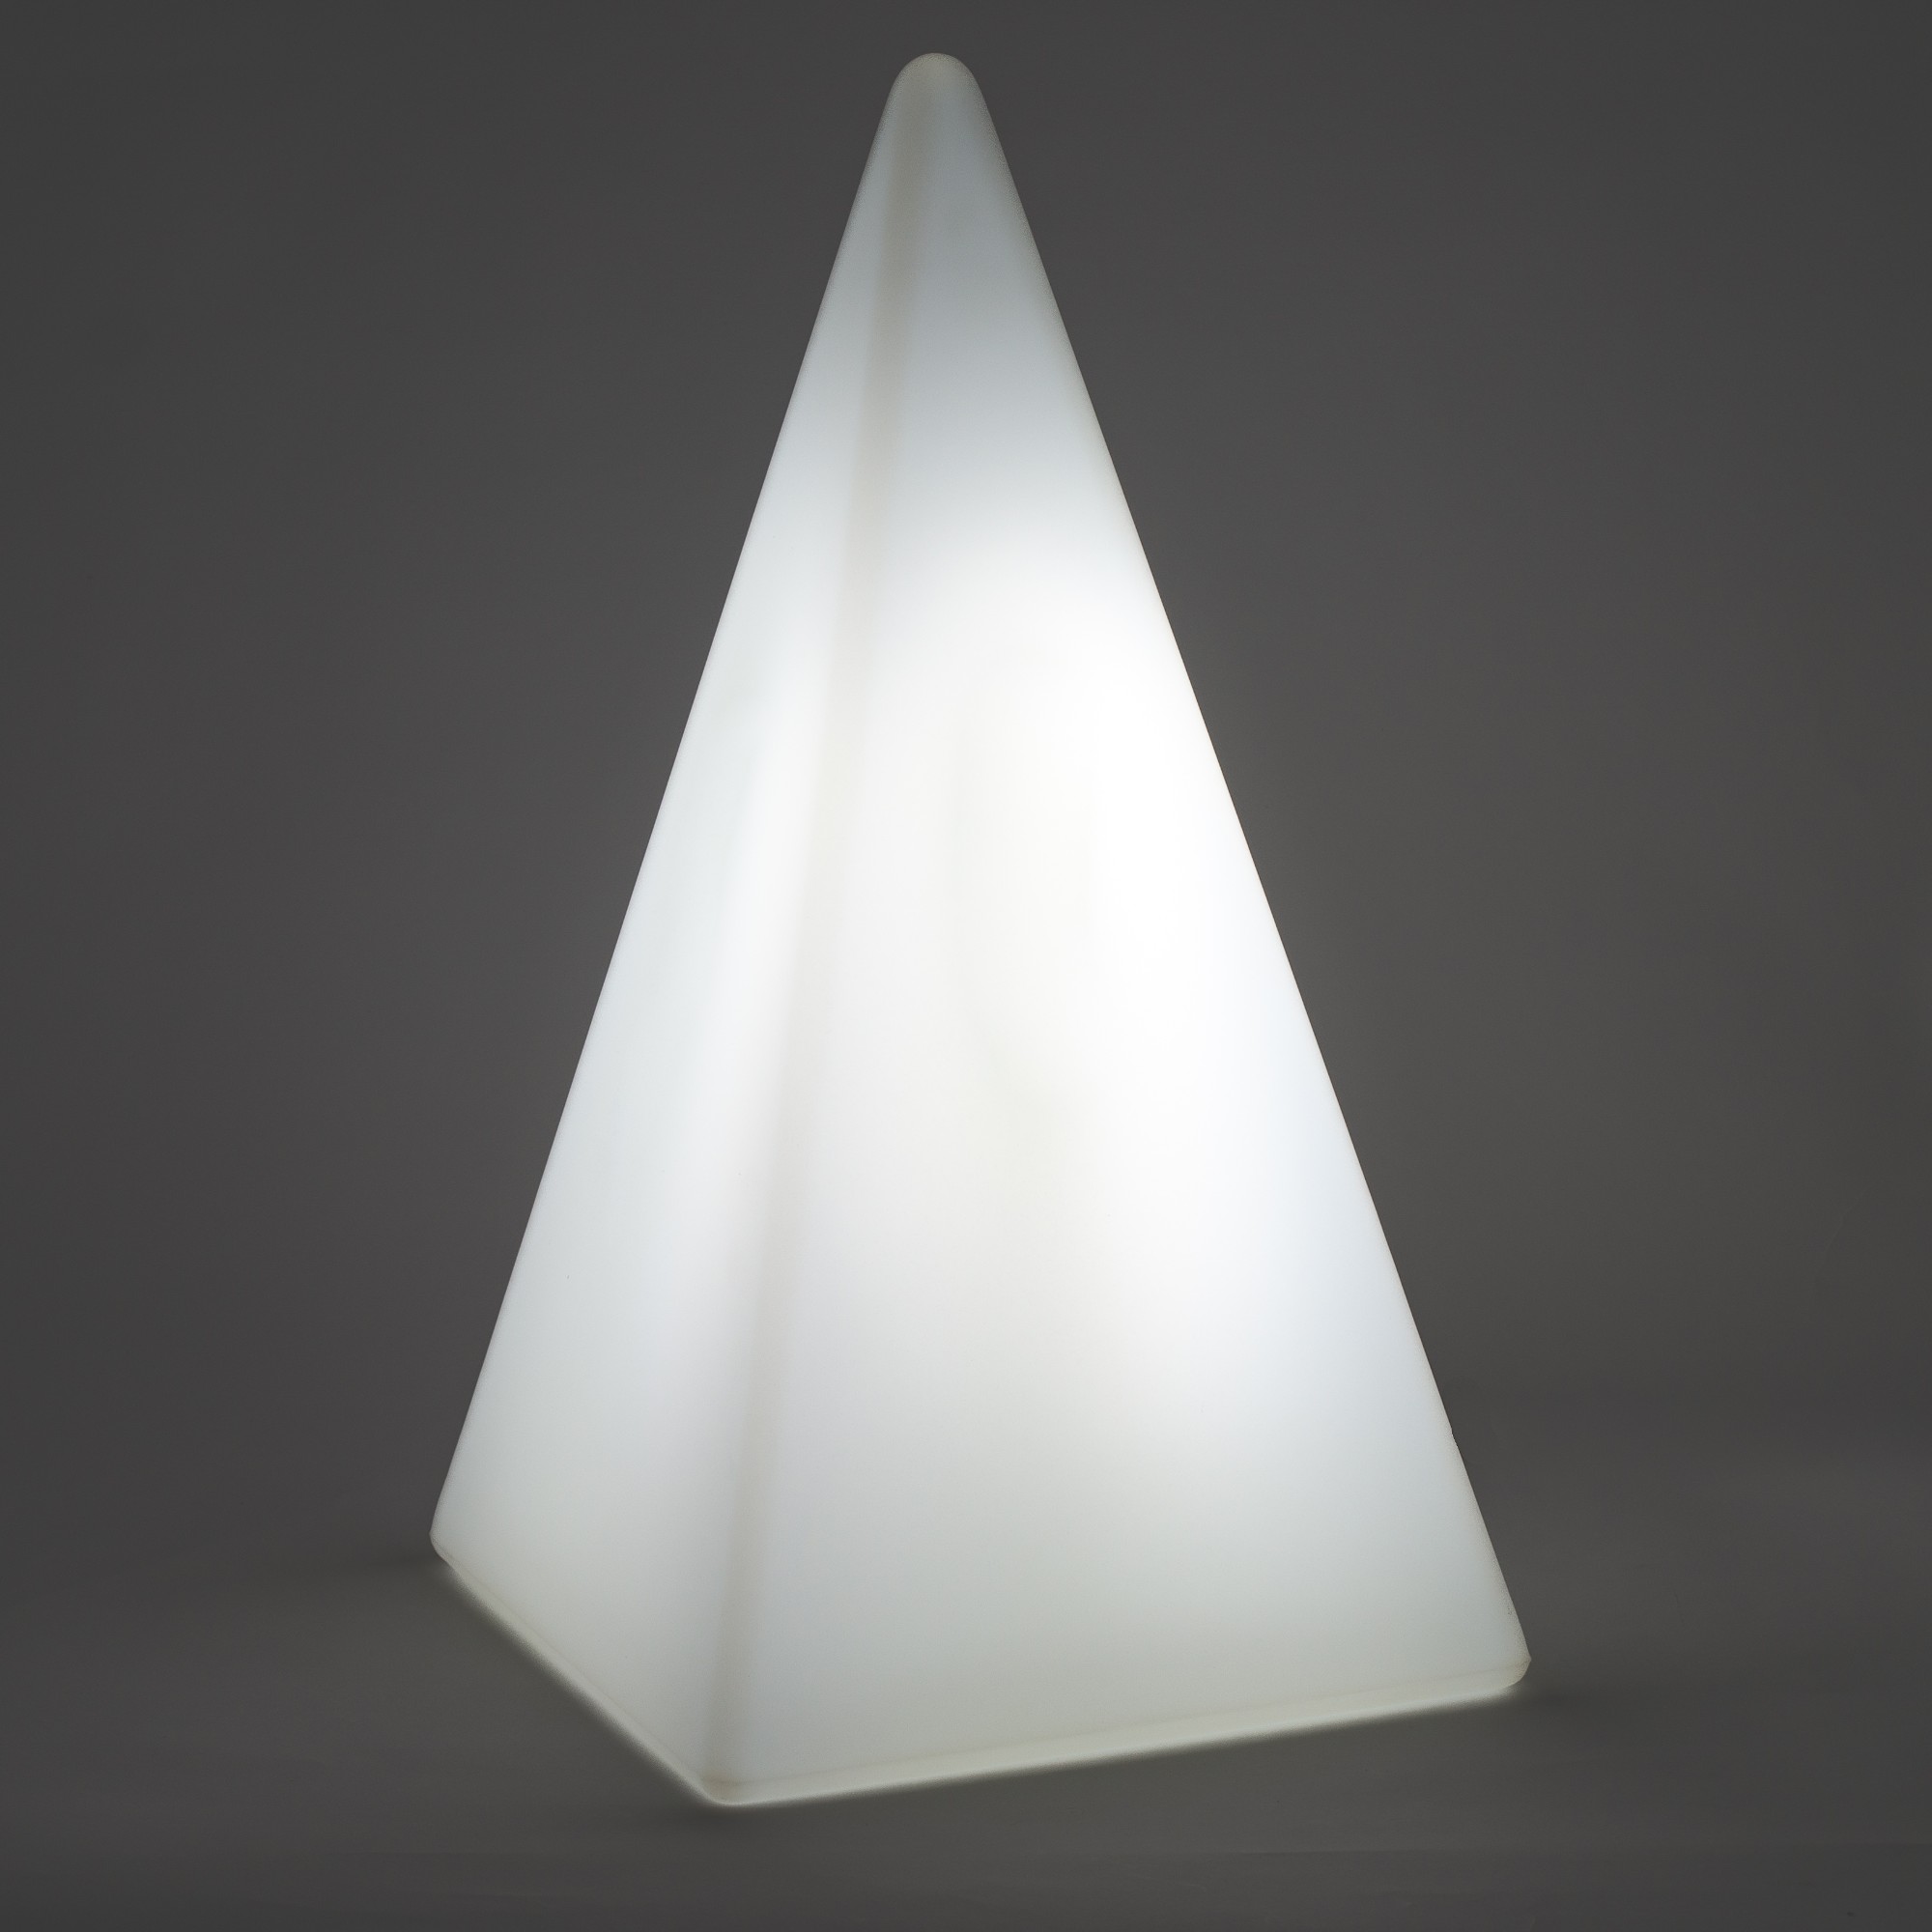 70203 Standleuchte Pyramide 54 cm der Firma EPSTEIN Design Leuchten